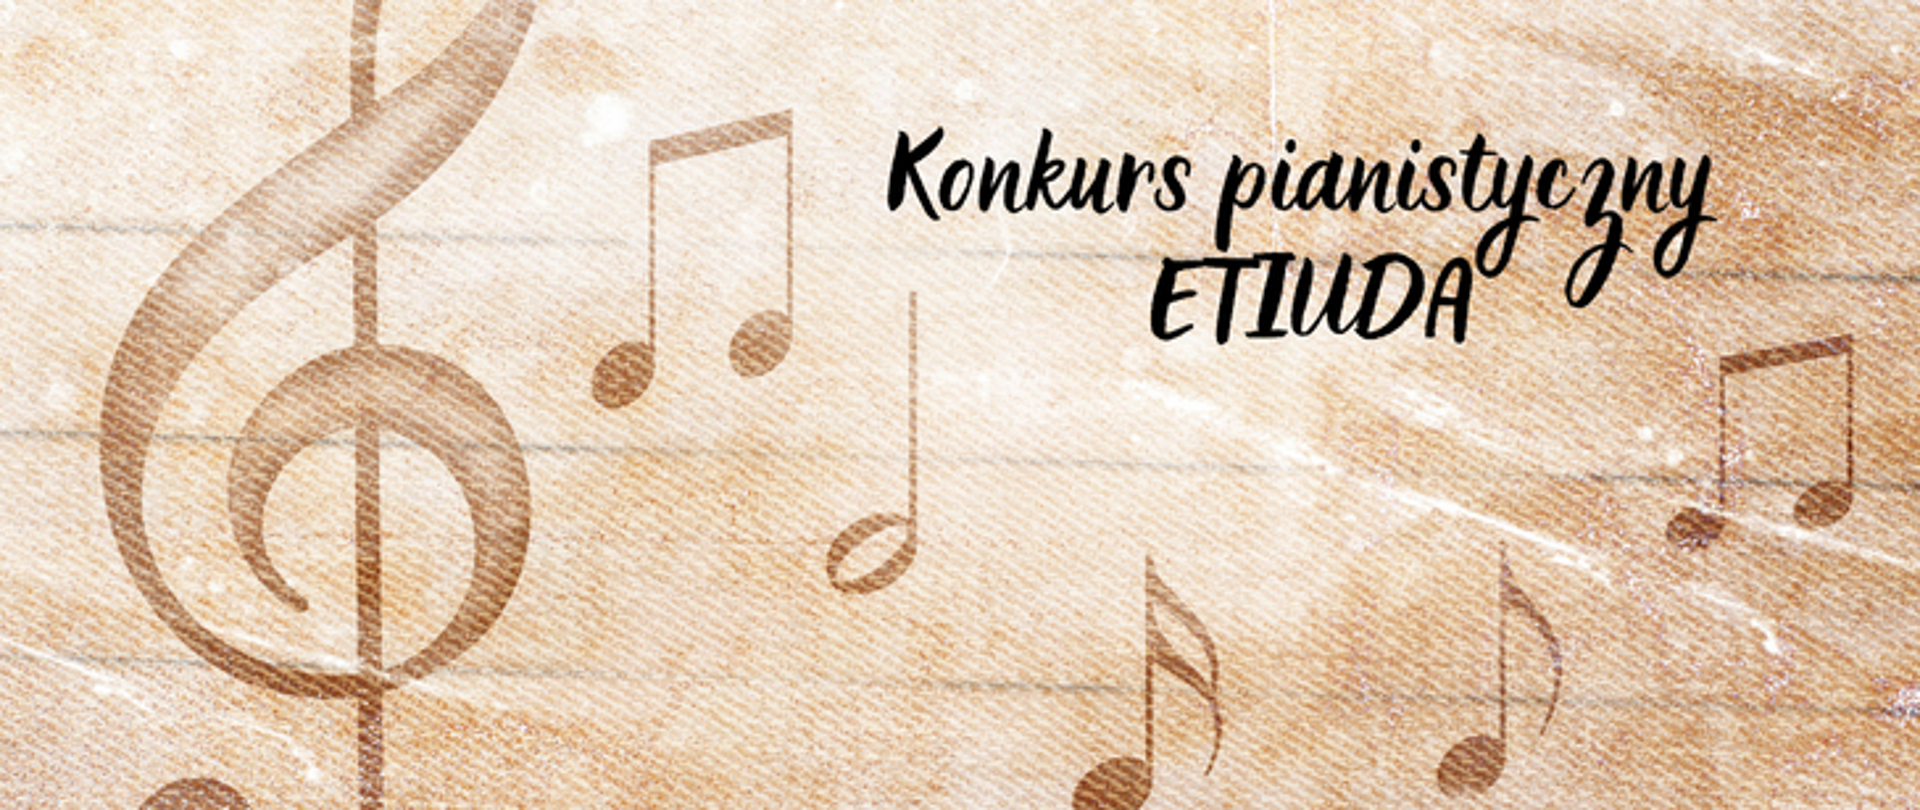 Plakat na bezowym tle o podłożu pięciolinii zawierający klucz wiolinowy oraz nuty. Na górze napis konkurs pianistyczny Etiuda.